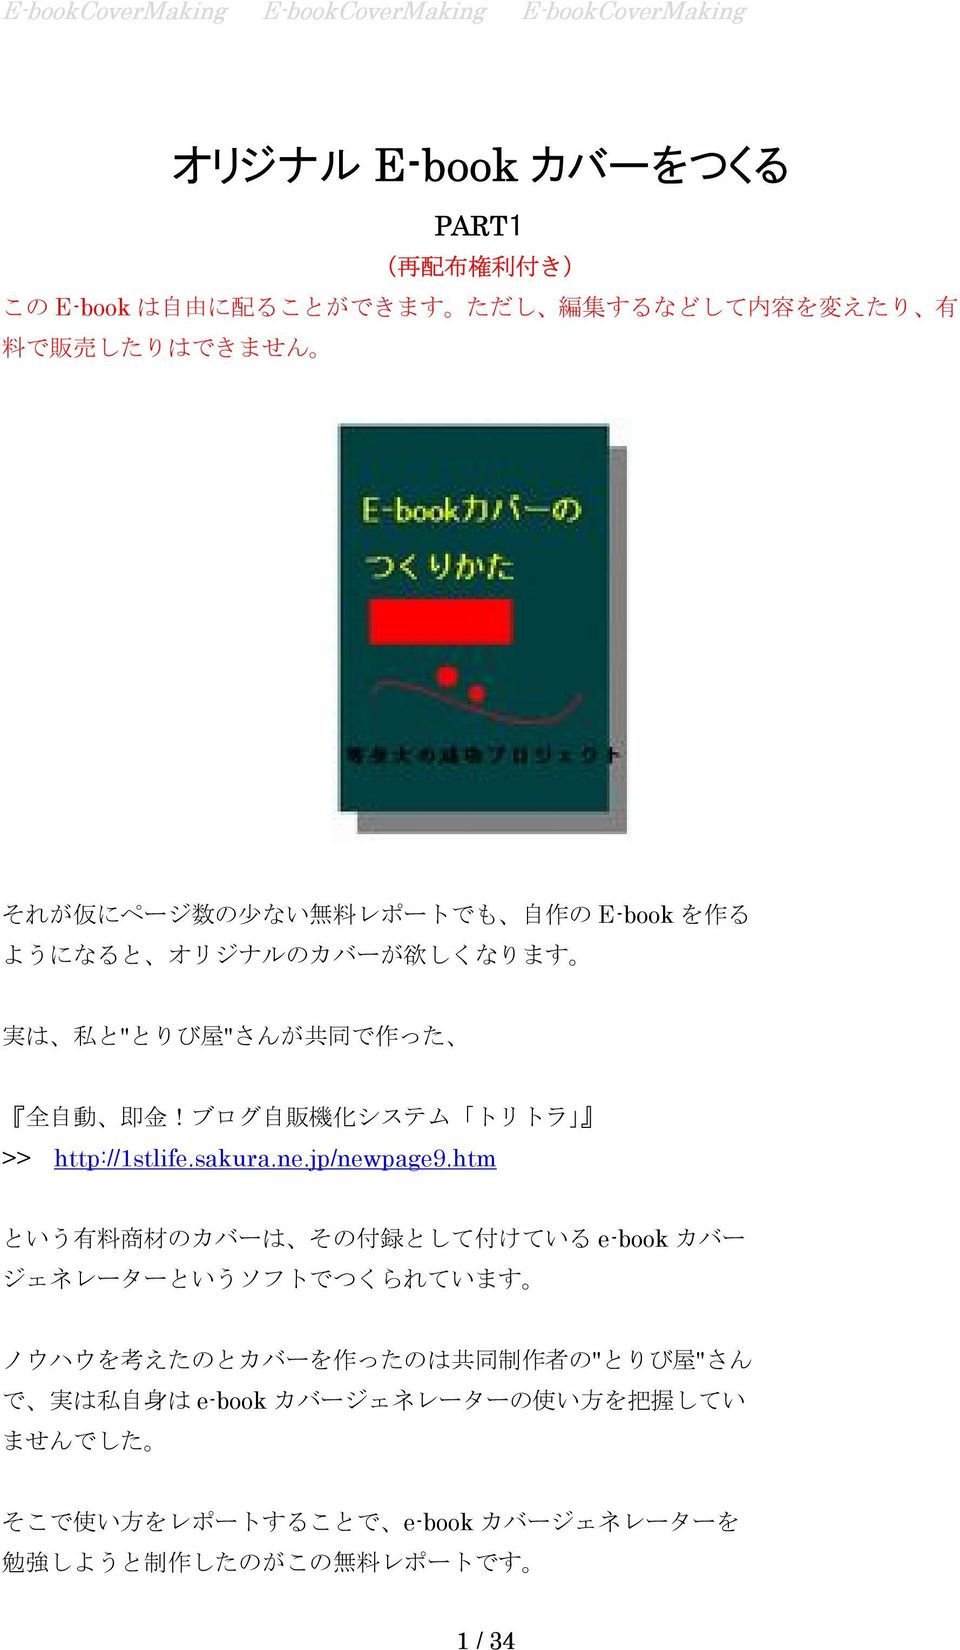 ブログ 自 販 機 化 システム トリトラ >> http://1stlife.sakura.ne.jp/newpage9.